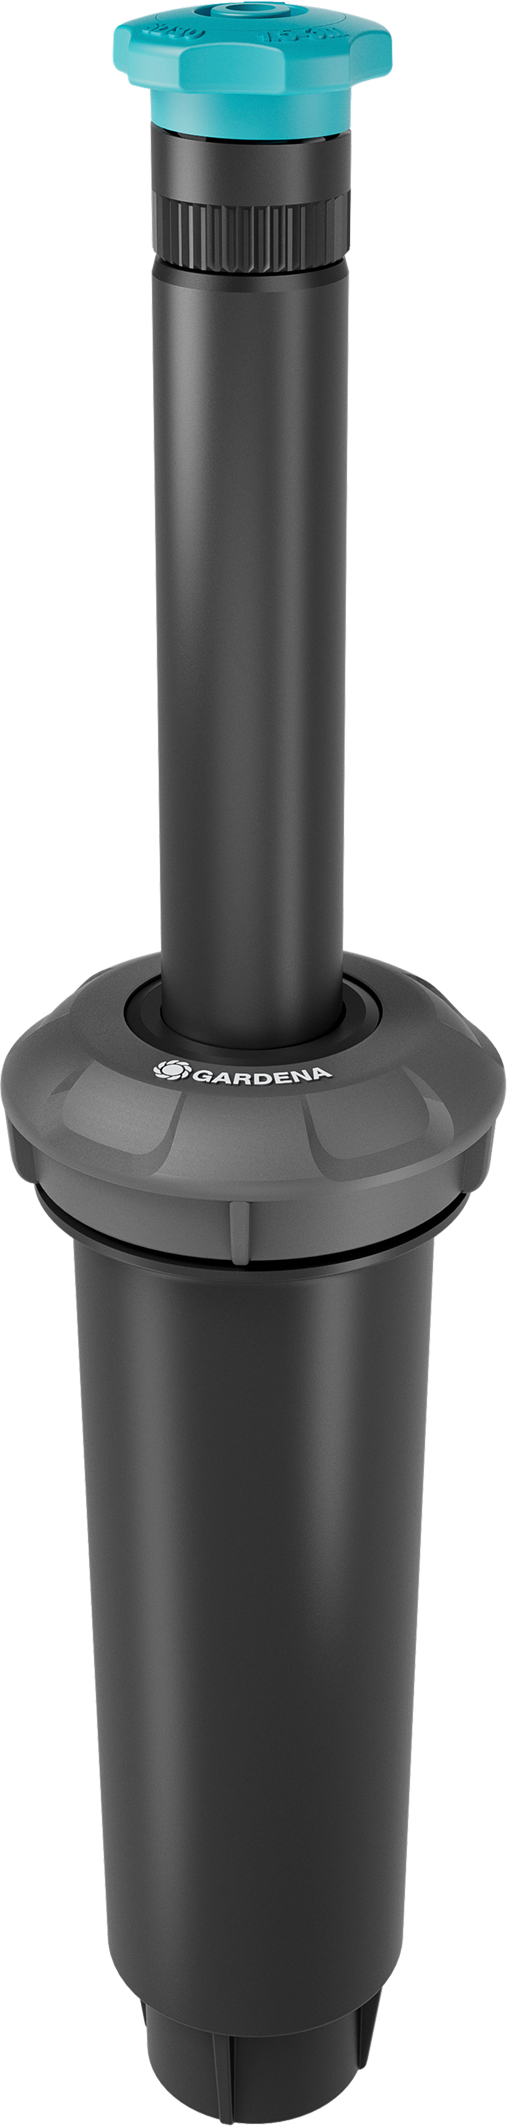 GARDENA Pop-up Sprinkler SD30